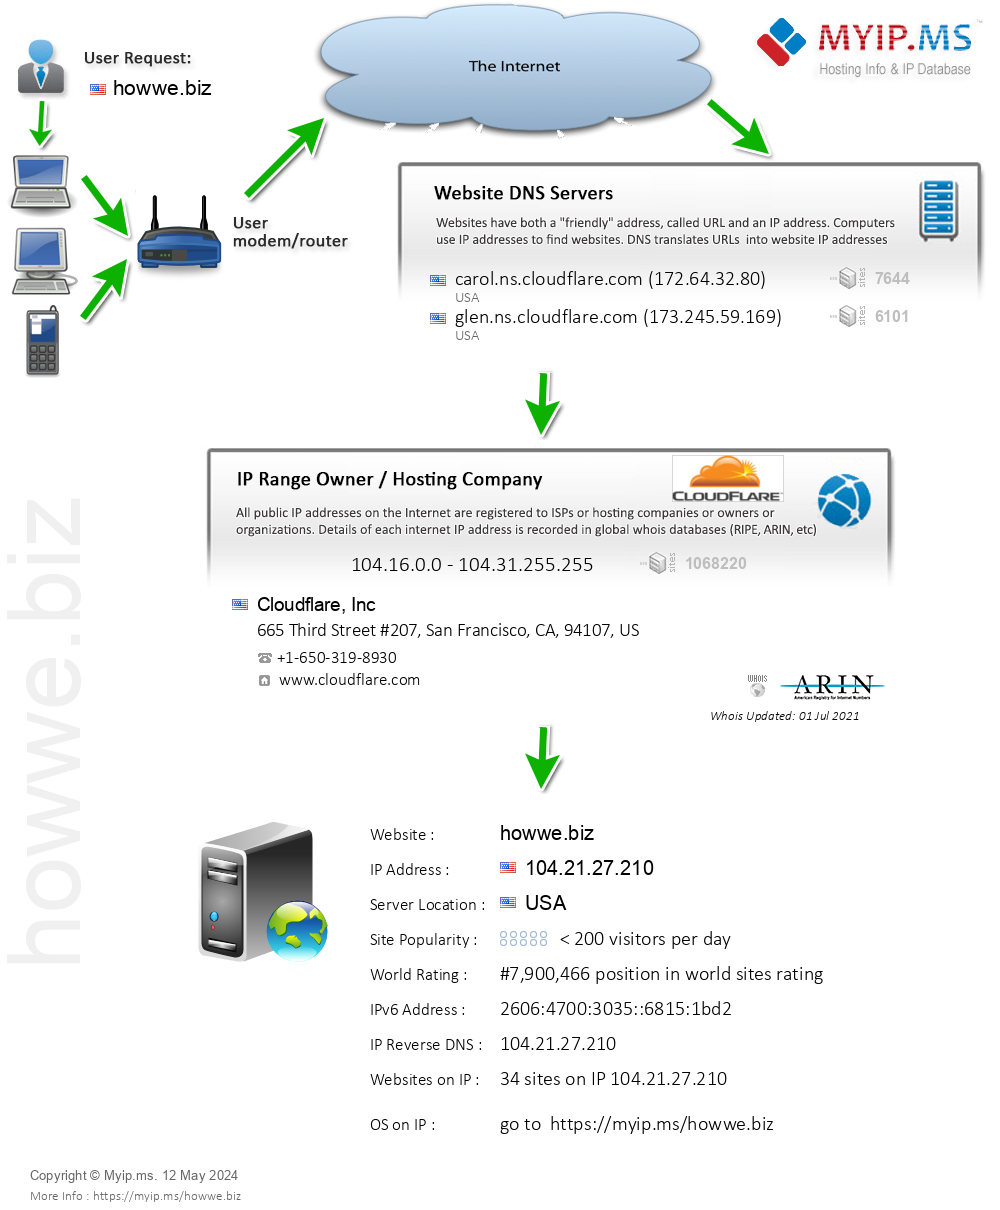 Howwe.biz - Website Hosting Visual IP Diagram